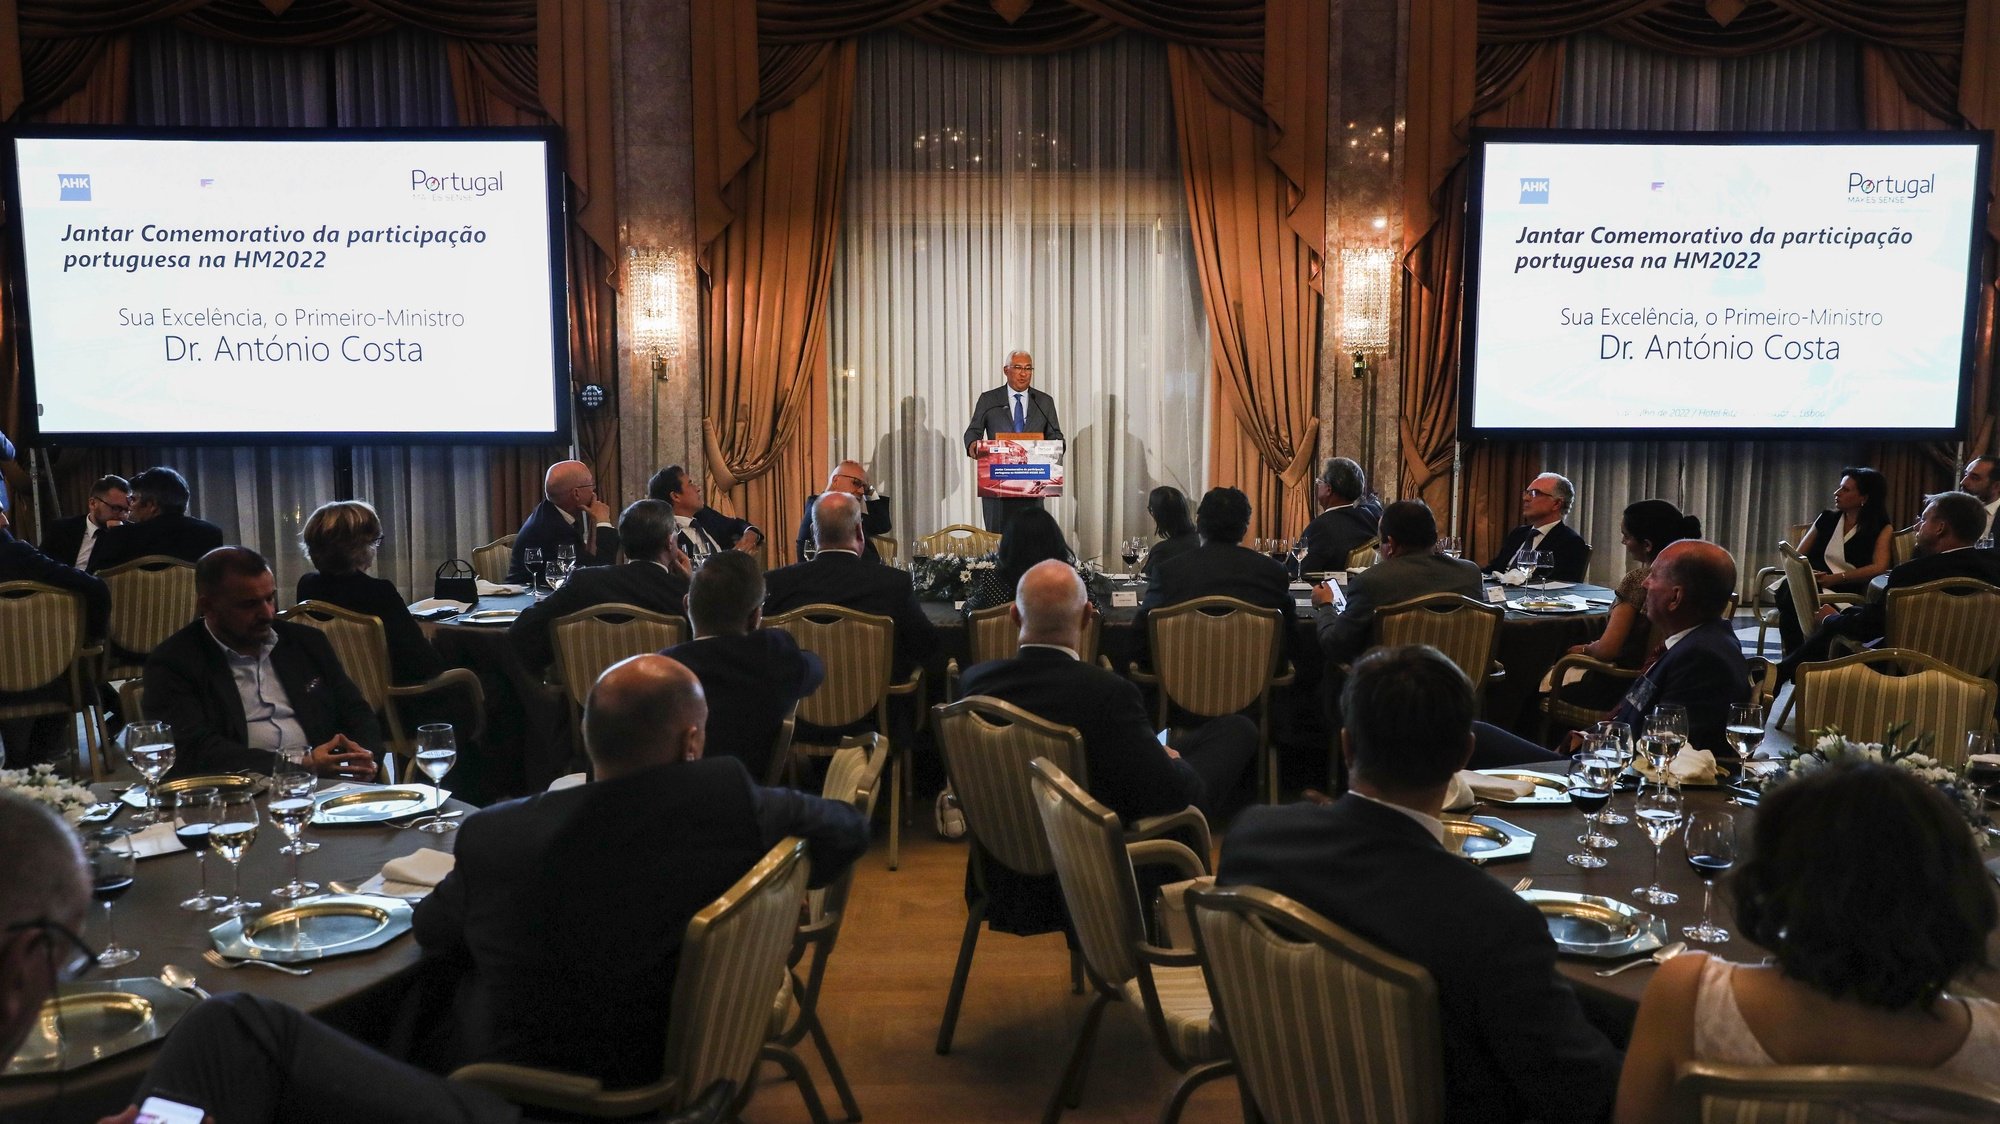 O primeiro-ministro, António Costa, intervém durante o jantar comemorativo da participação portuguesa na Hannover Messe 2022, promovido pela Câmara de Comércio e Indústria Luso-Alemã, em Lisboa, 5 de julho de 2022. MIGUEL A. LOPES/LUSA